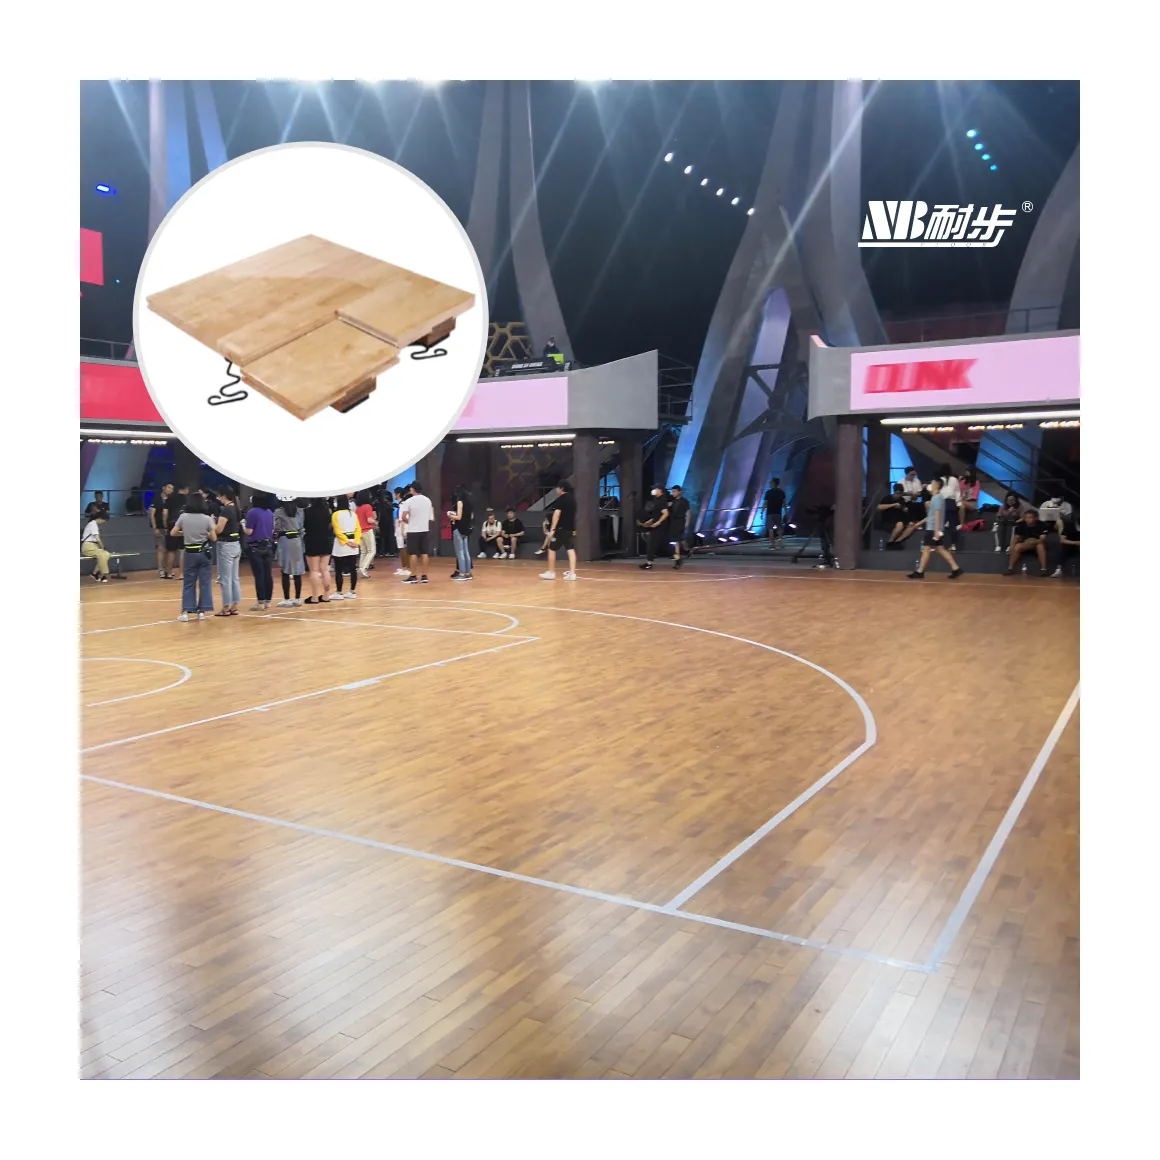 chinesische direktversandfabrik sportboden ahorn birke eiche hevea hartholz sportboden squash basketballboden innenraum